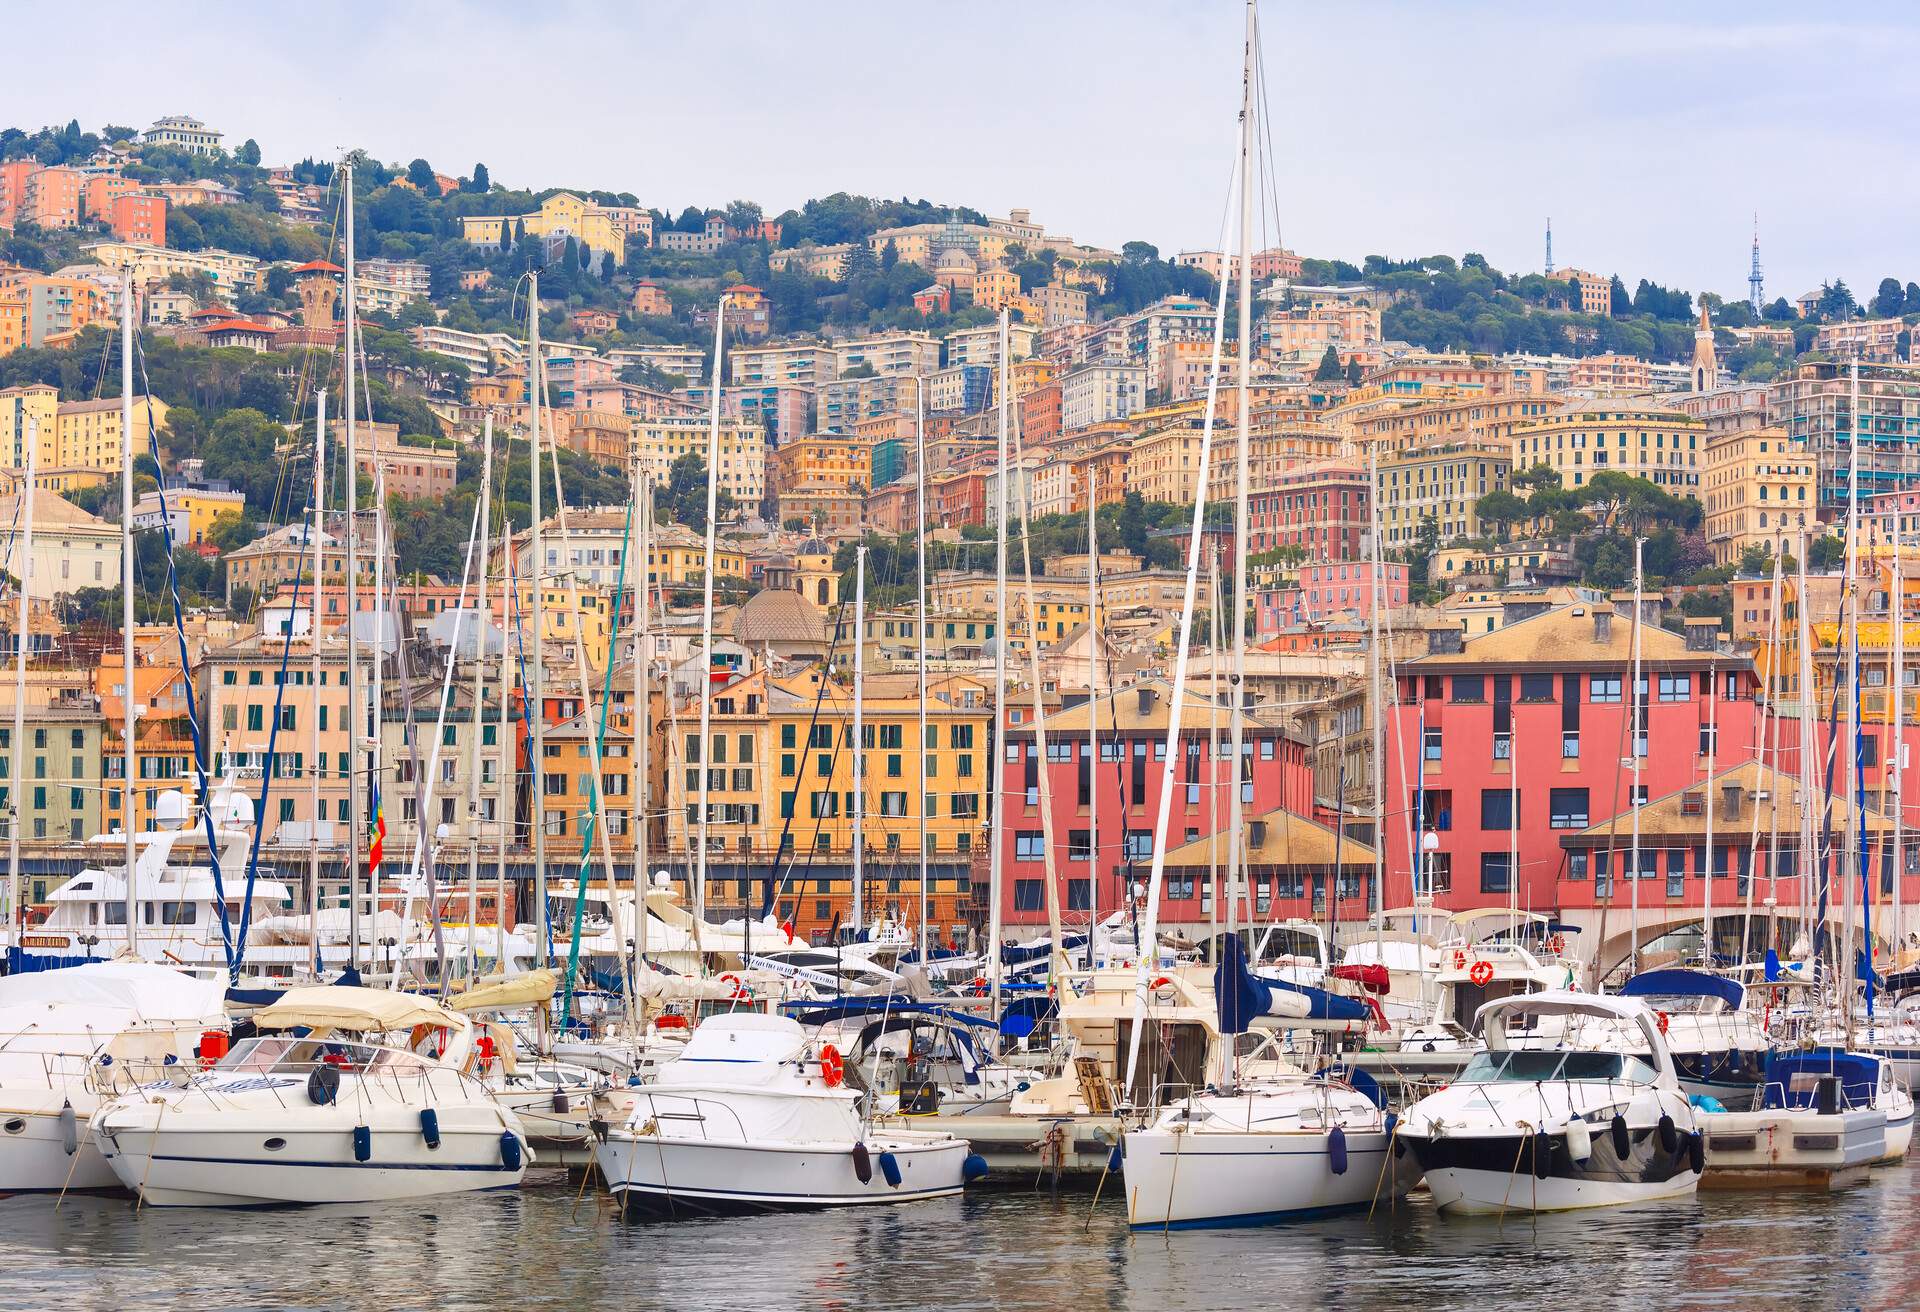 Marina Porto Antico Genova, where many sailboats and yachts are moored, Genoa, Italy.